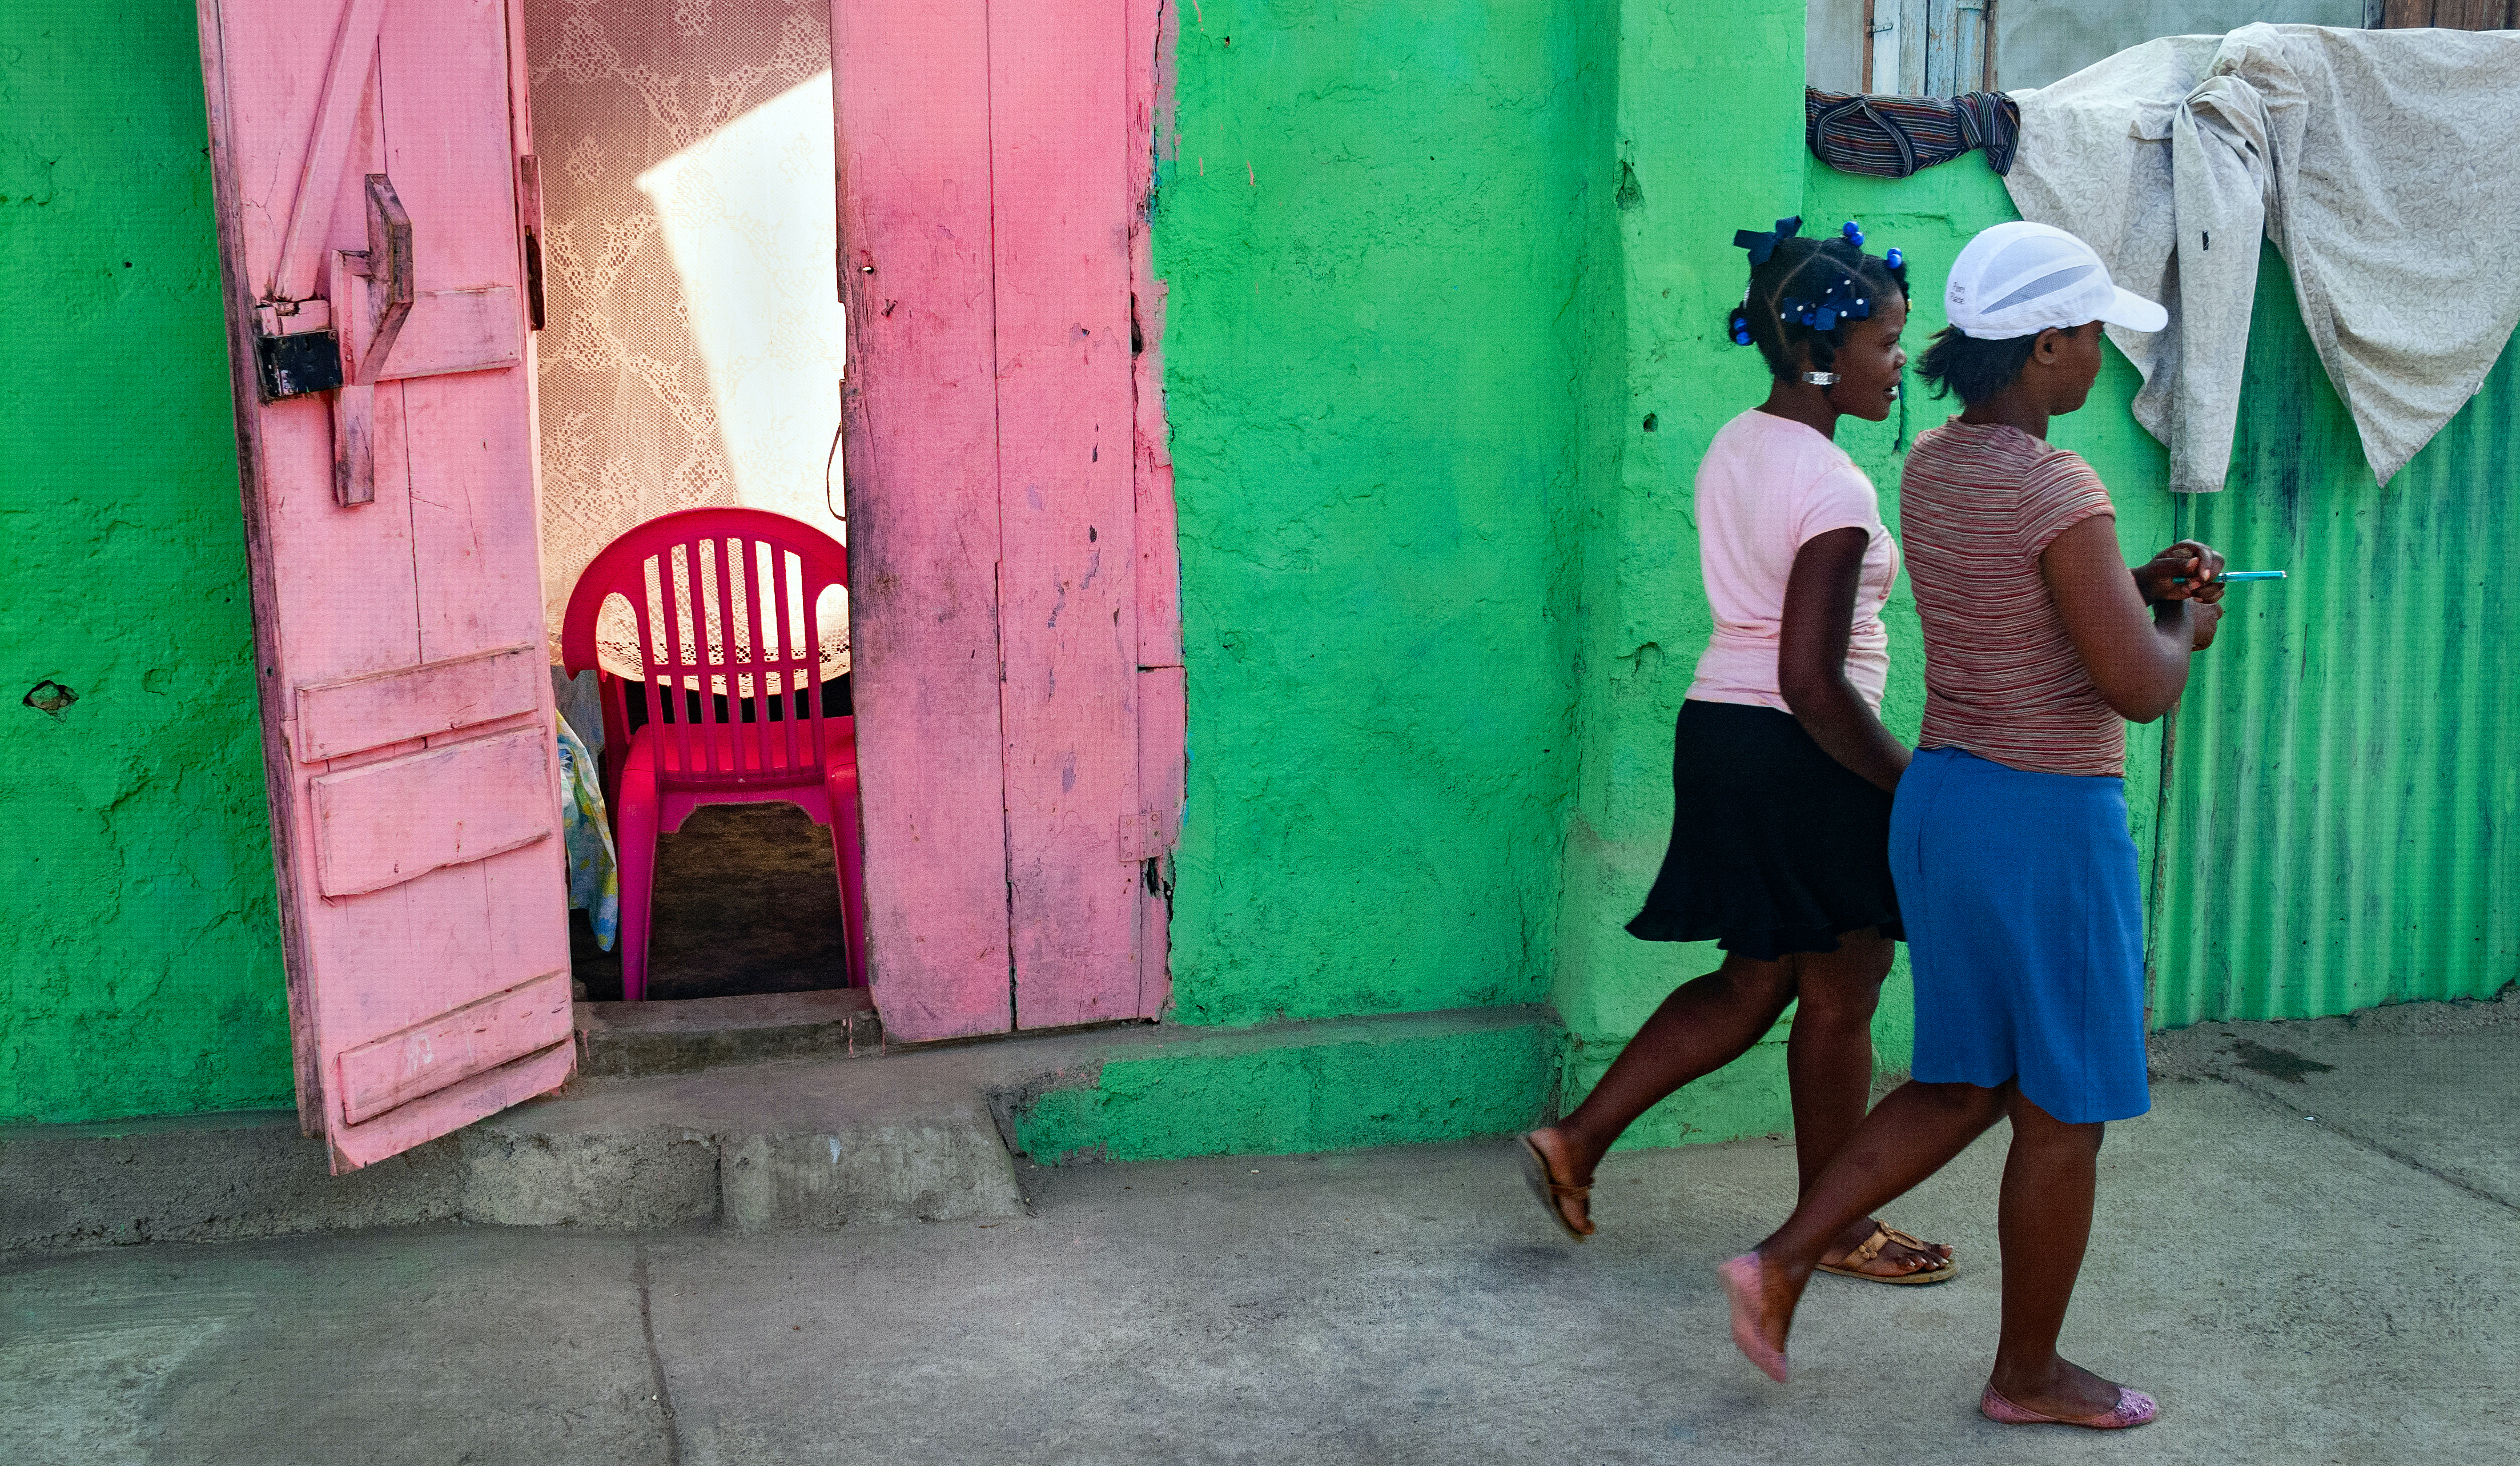 Two young Haitian women walk along the street.